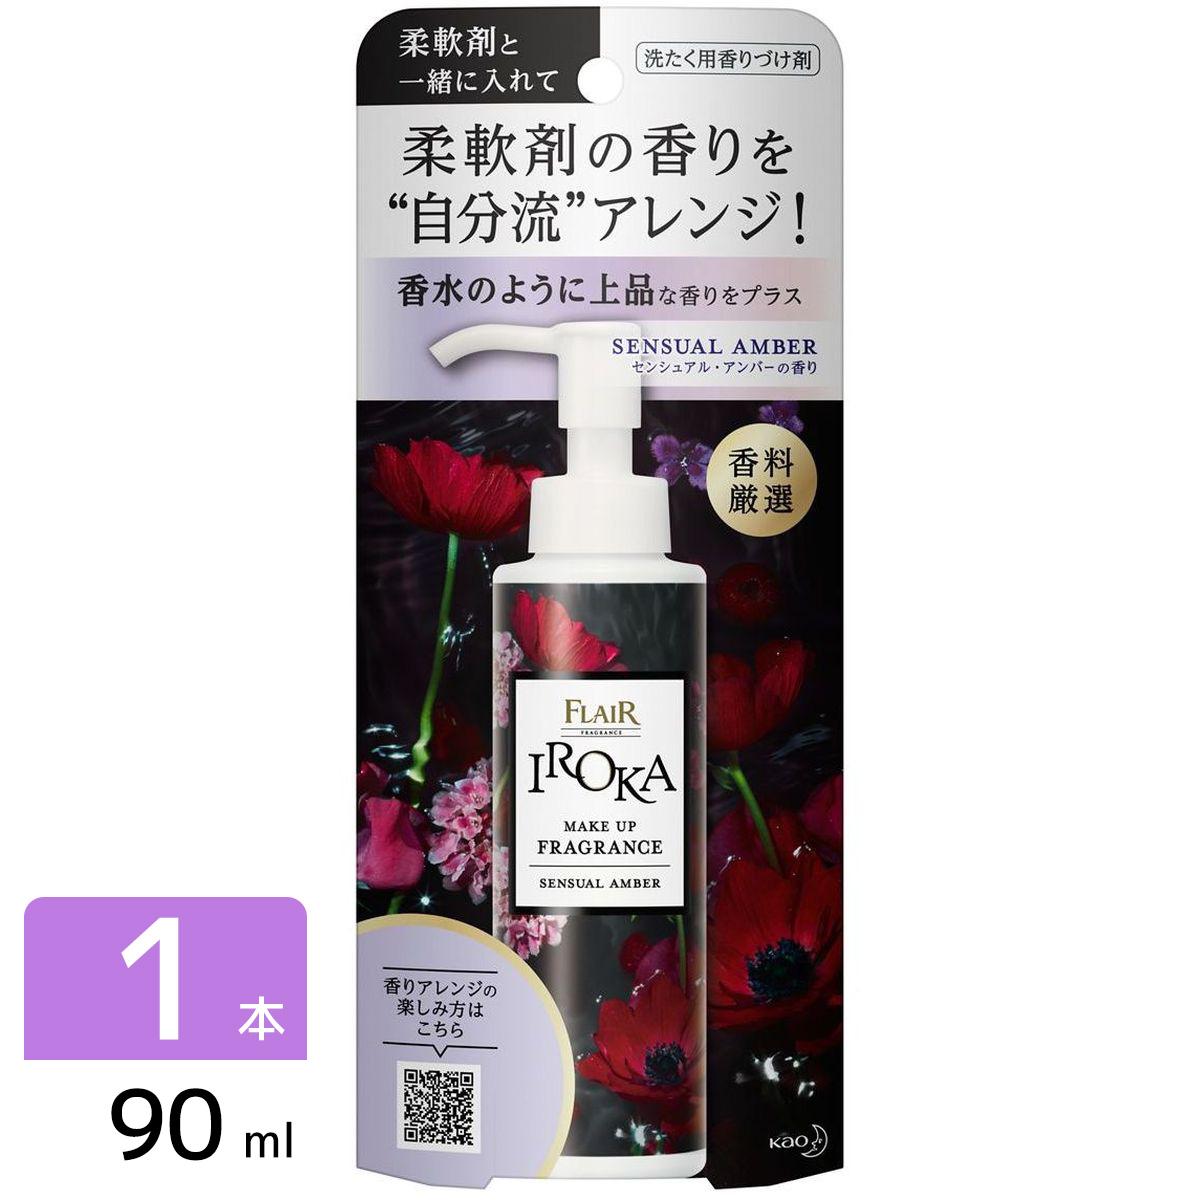 IROKA メイクアップフレグランス 洗たく用香りづけ剤 センシュアルアンバー 本体 90ml